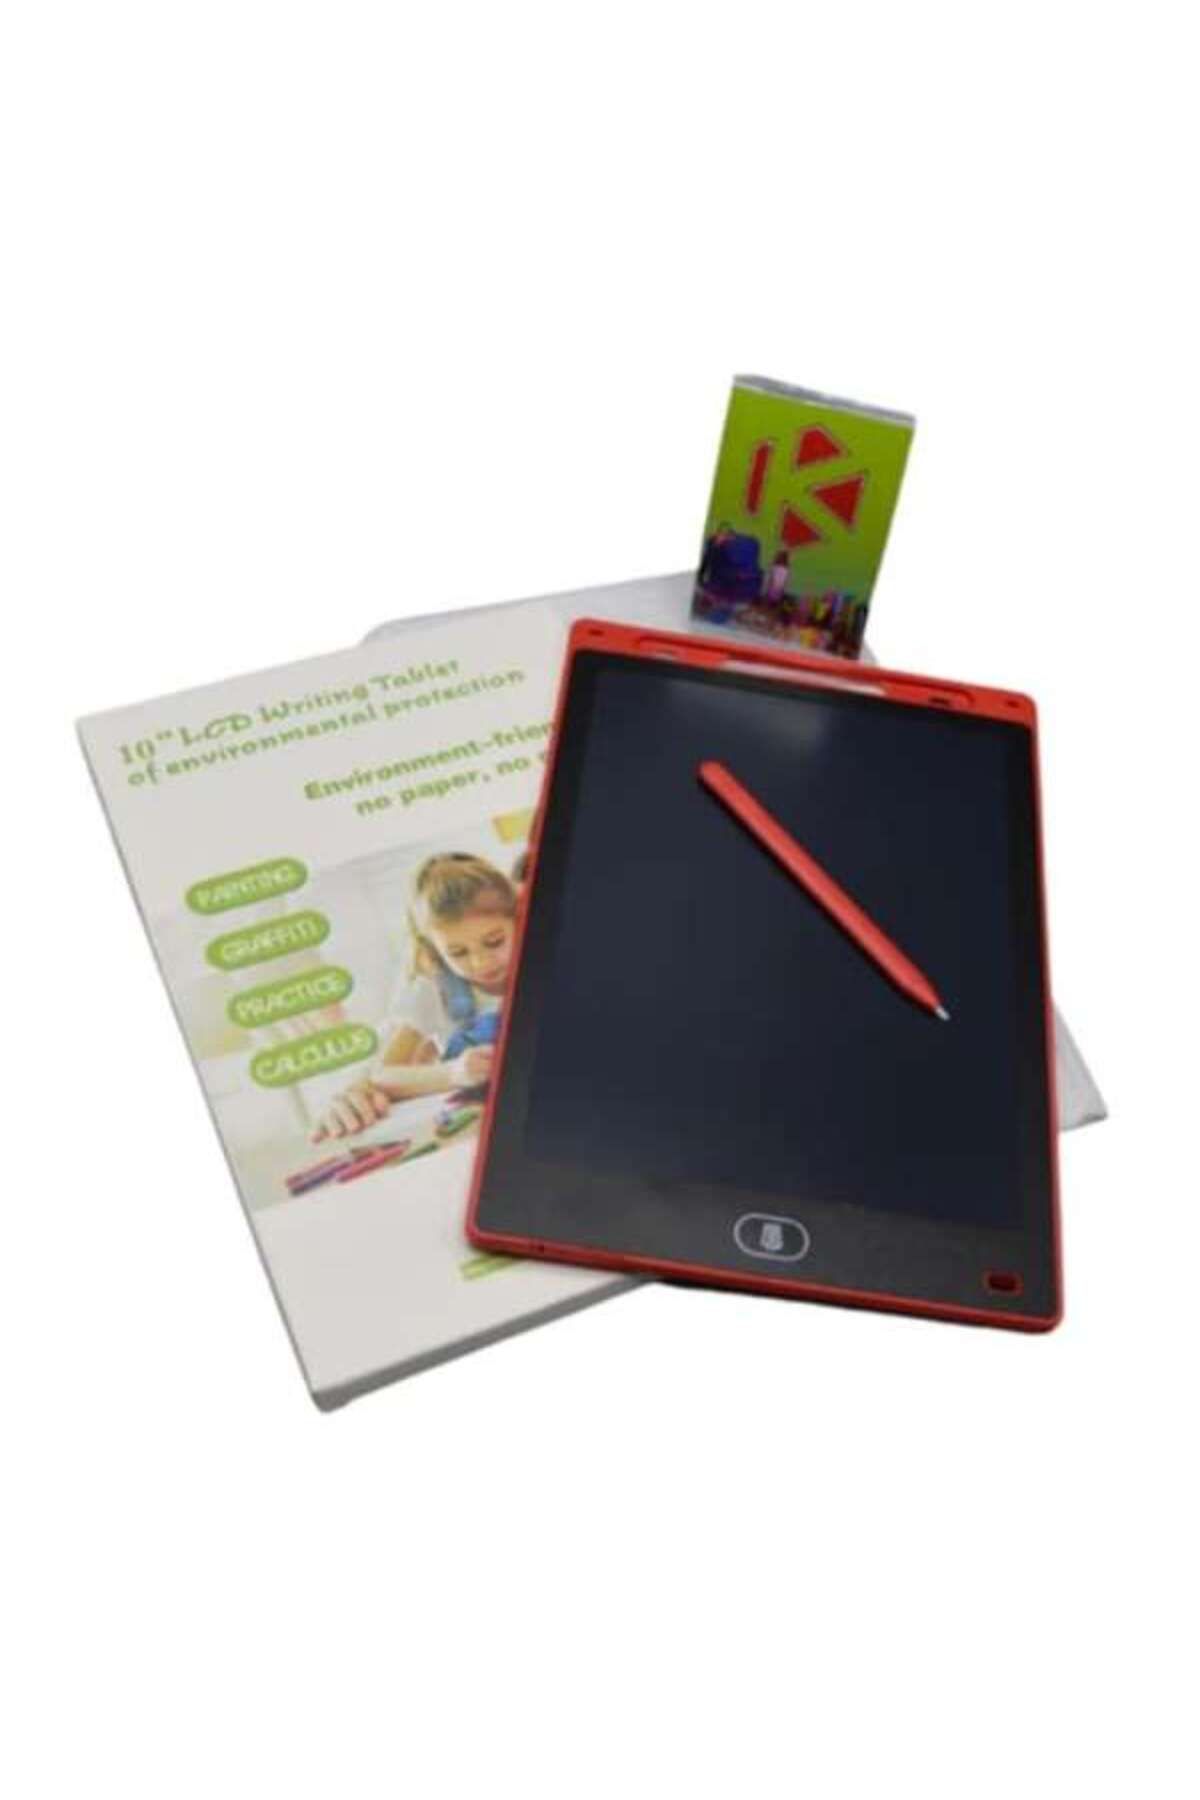 IDE Çocuklar hediyeler yazma tableti oyuncak  yazı tahtası silinebilir çizim tableti  çocuk yazma